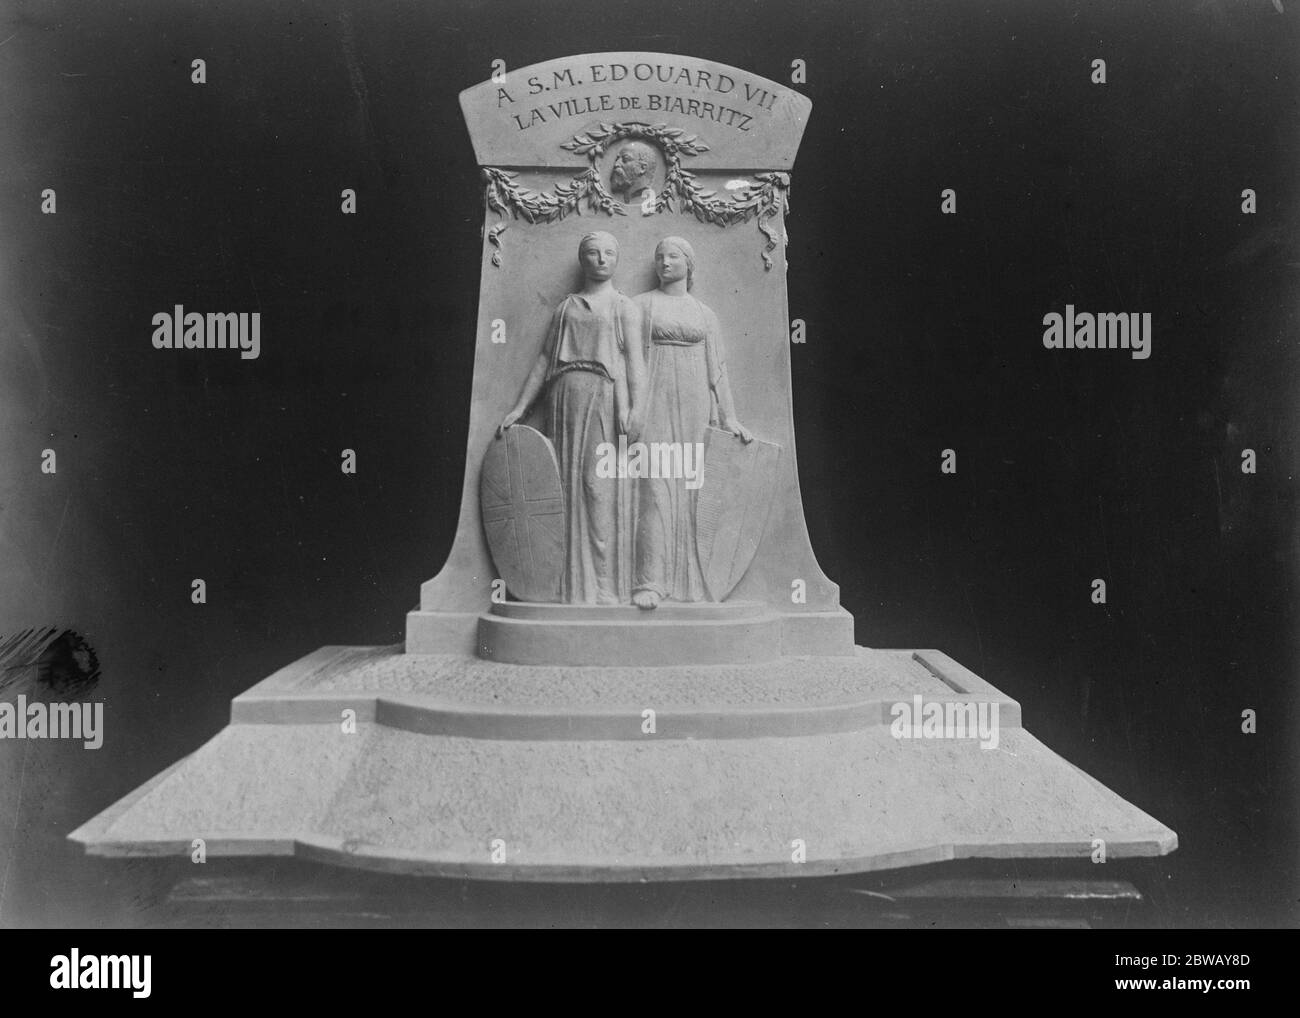 Denkmal für König Edward VII. Modell des Denkmals, das in Biarritz zum Gedenken an König Eduard VII errichtet wird. Januar 1922 Stockfoto